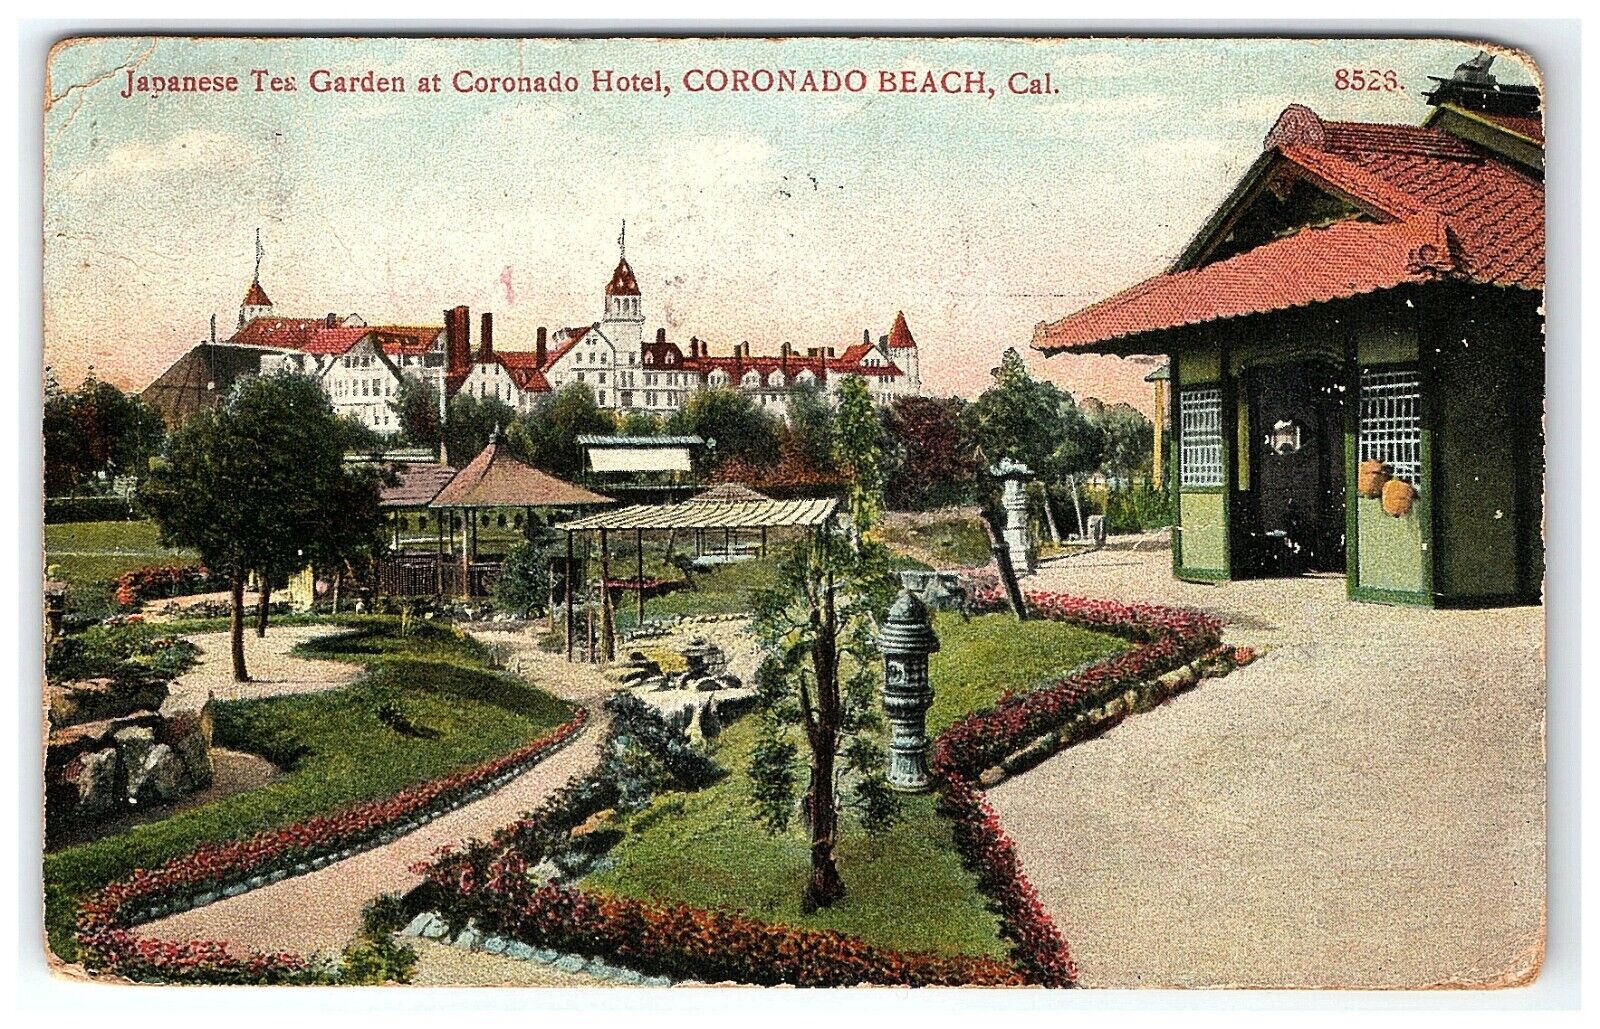 1908 Japanese Tea Garden Coronado Beach Hotel Postcard California  